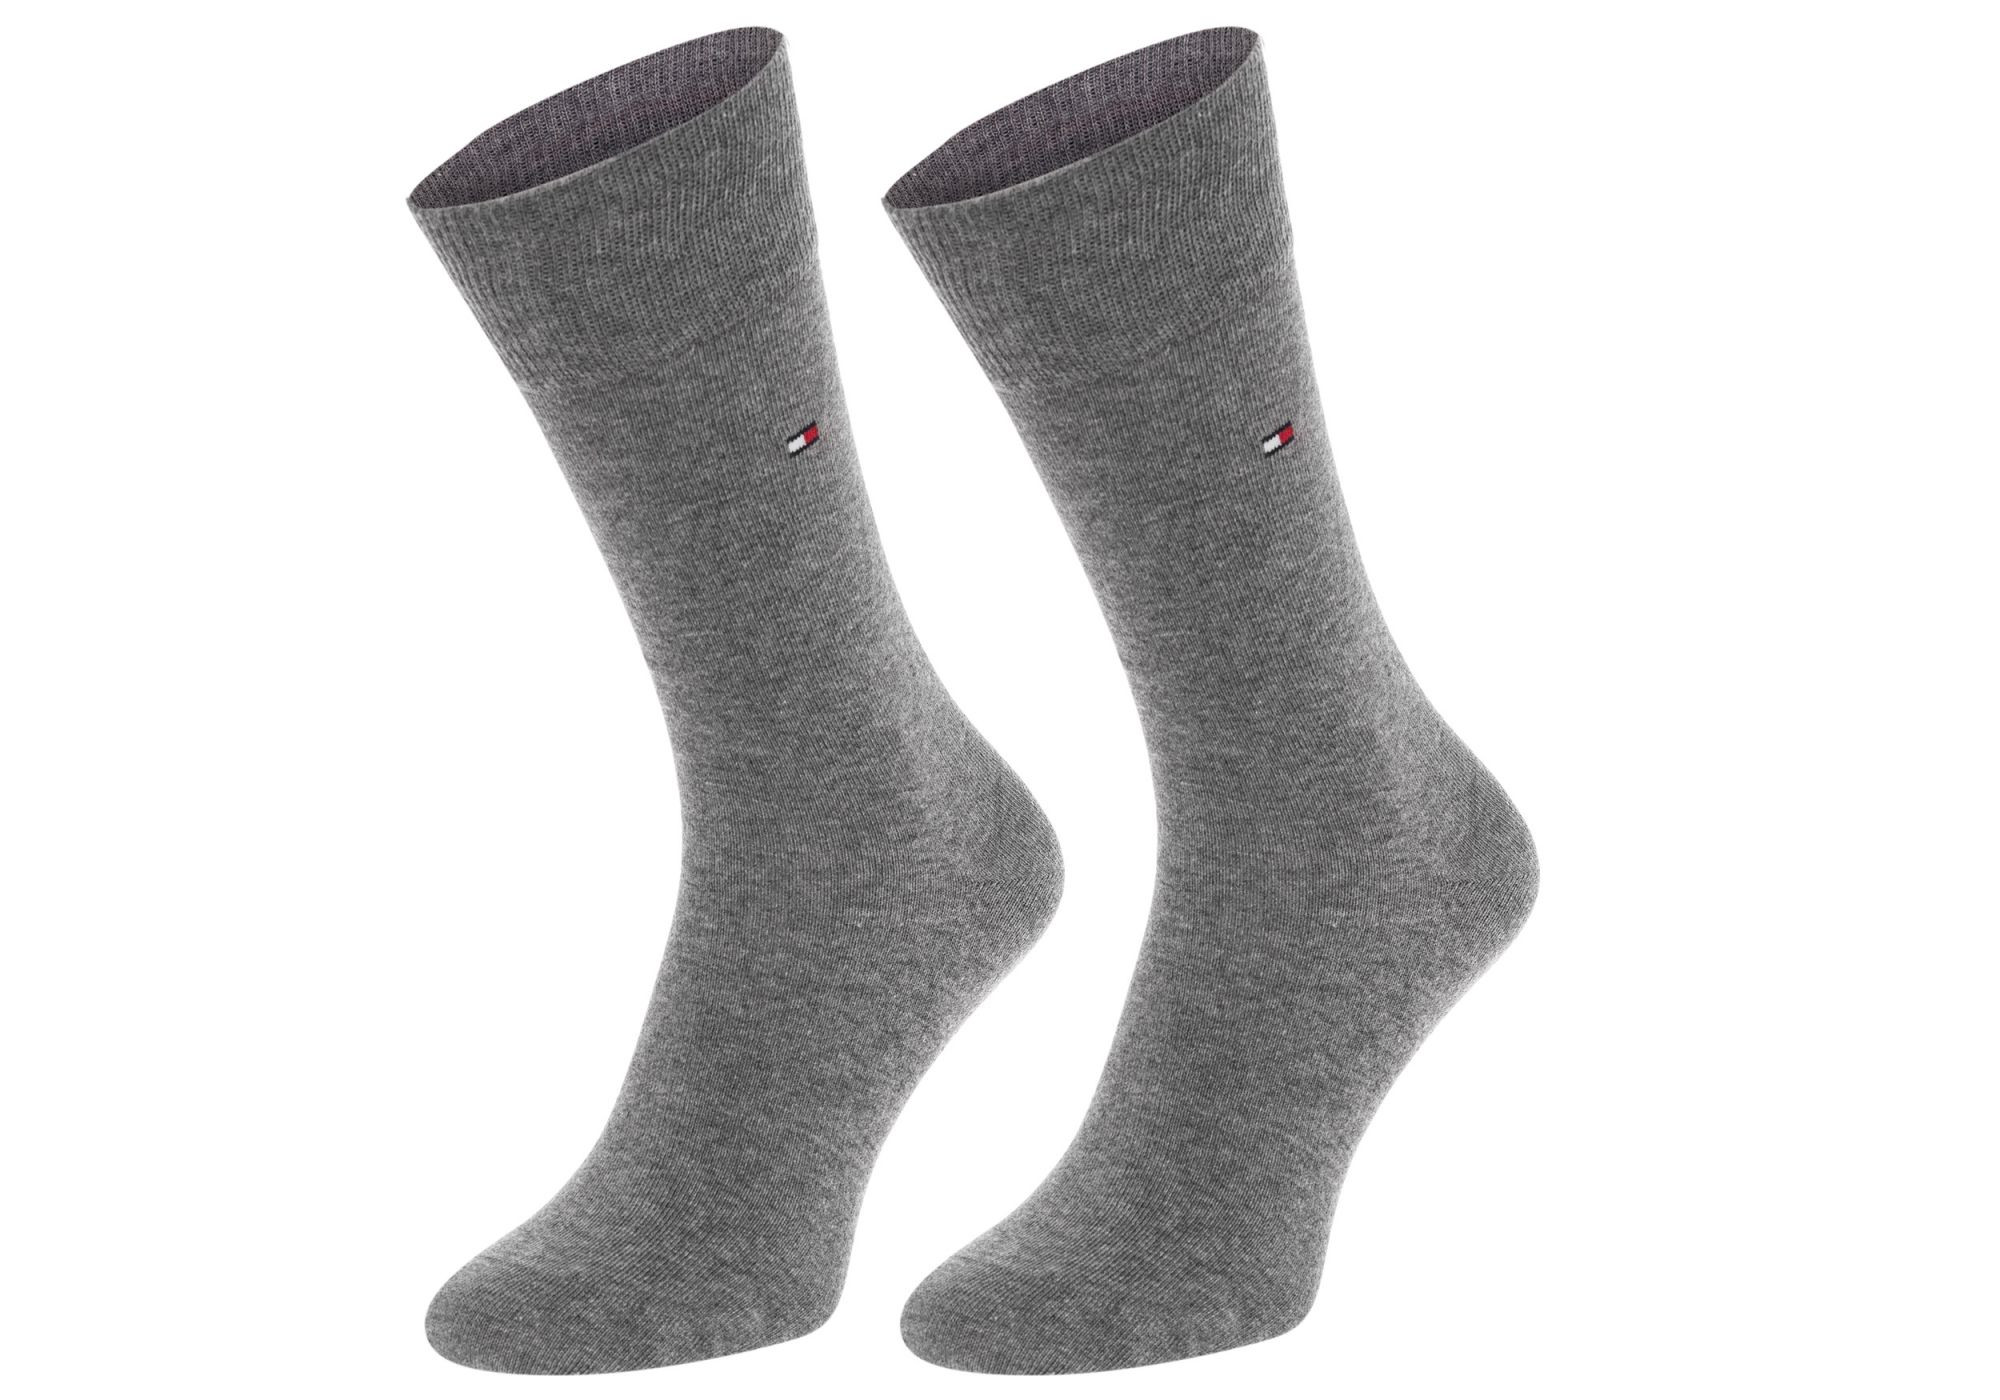 Ponožky Tommy Hilfiger 2Pack 371111 Grey 39-42